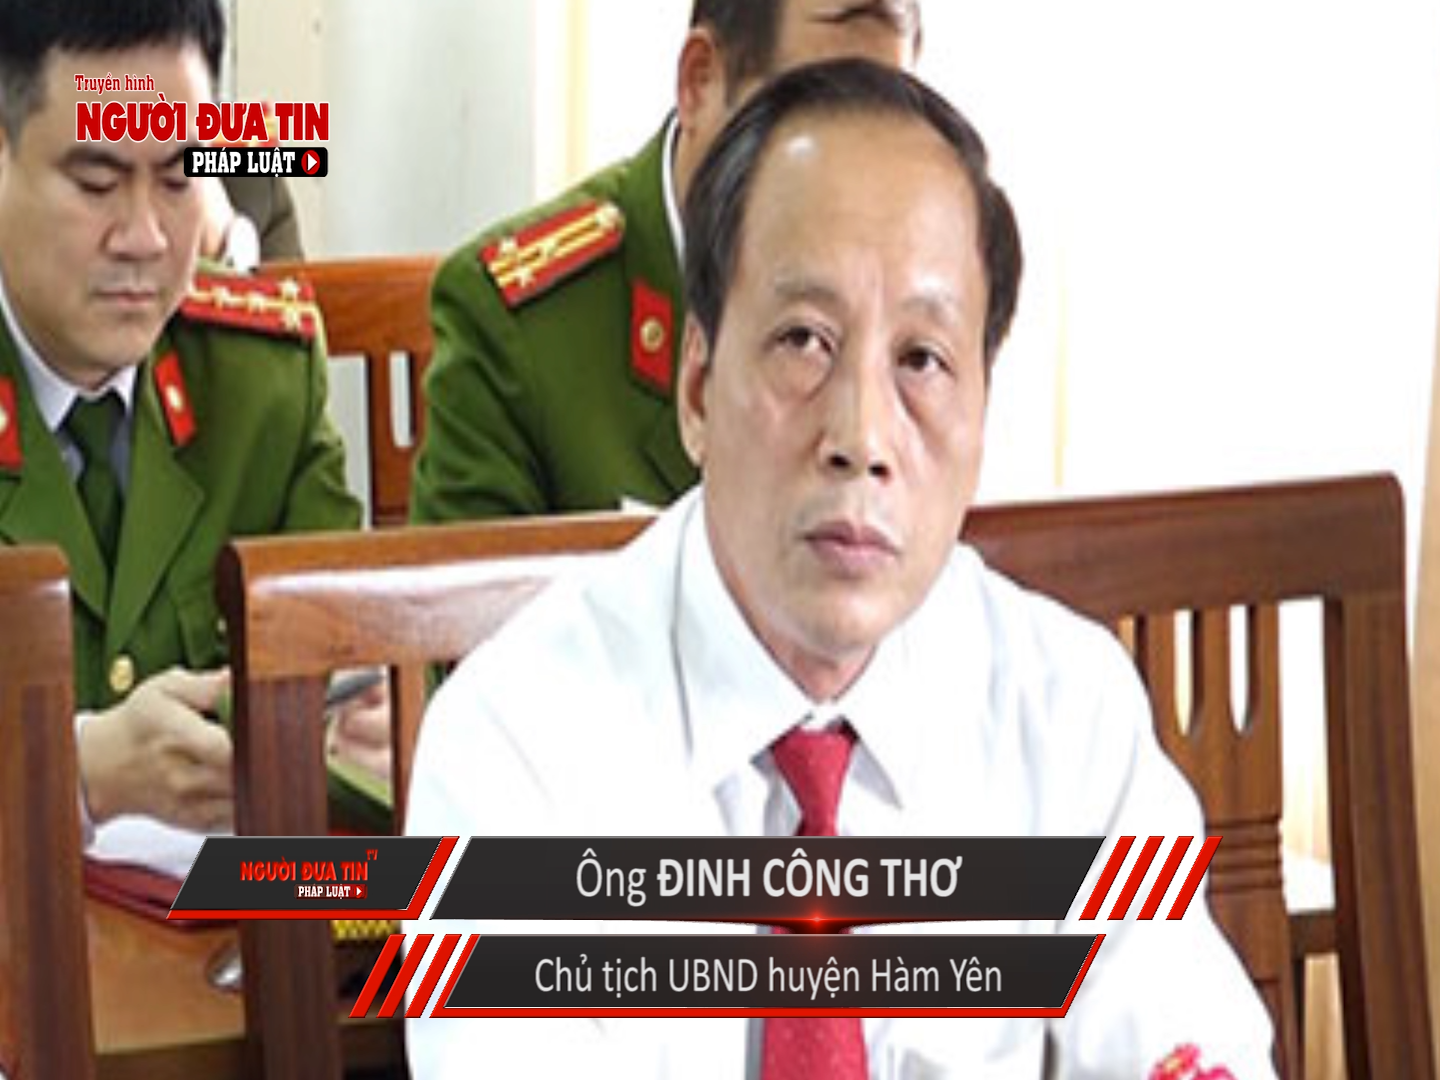 Nhiều lần PV liên hệ làm việc với ông Đinh Công Thơ, Chủ tịch UBND huyện Hàm Yên, nhưng không được hồi đáp